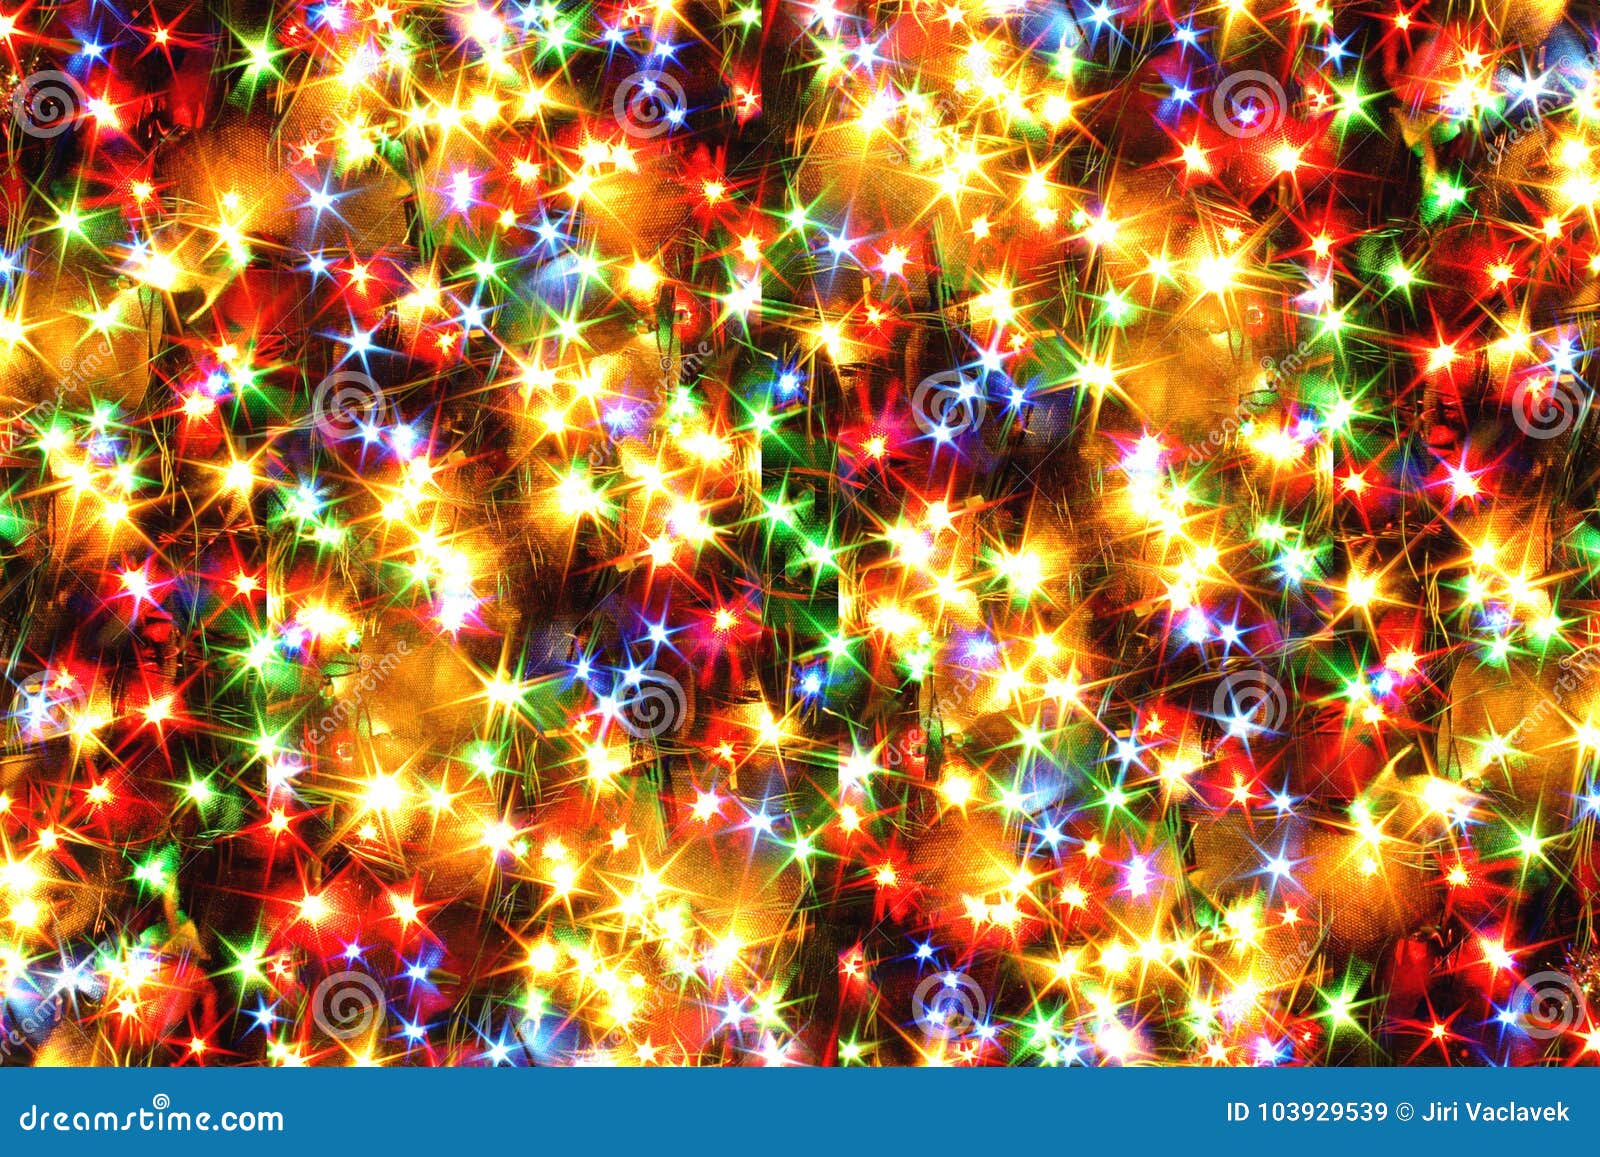 Đèn sáng rực rỡ đong đầy không gian, những hạt tuyết giữa muôn vàn ánh sáng rực rỡ đã tạo nên những bức hình kì diệu để bạn có thể đắm chìm vào không gian mùa Giáng Sinh ấm áp.